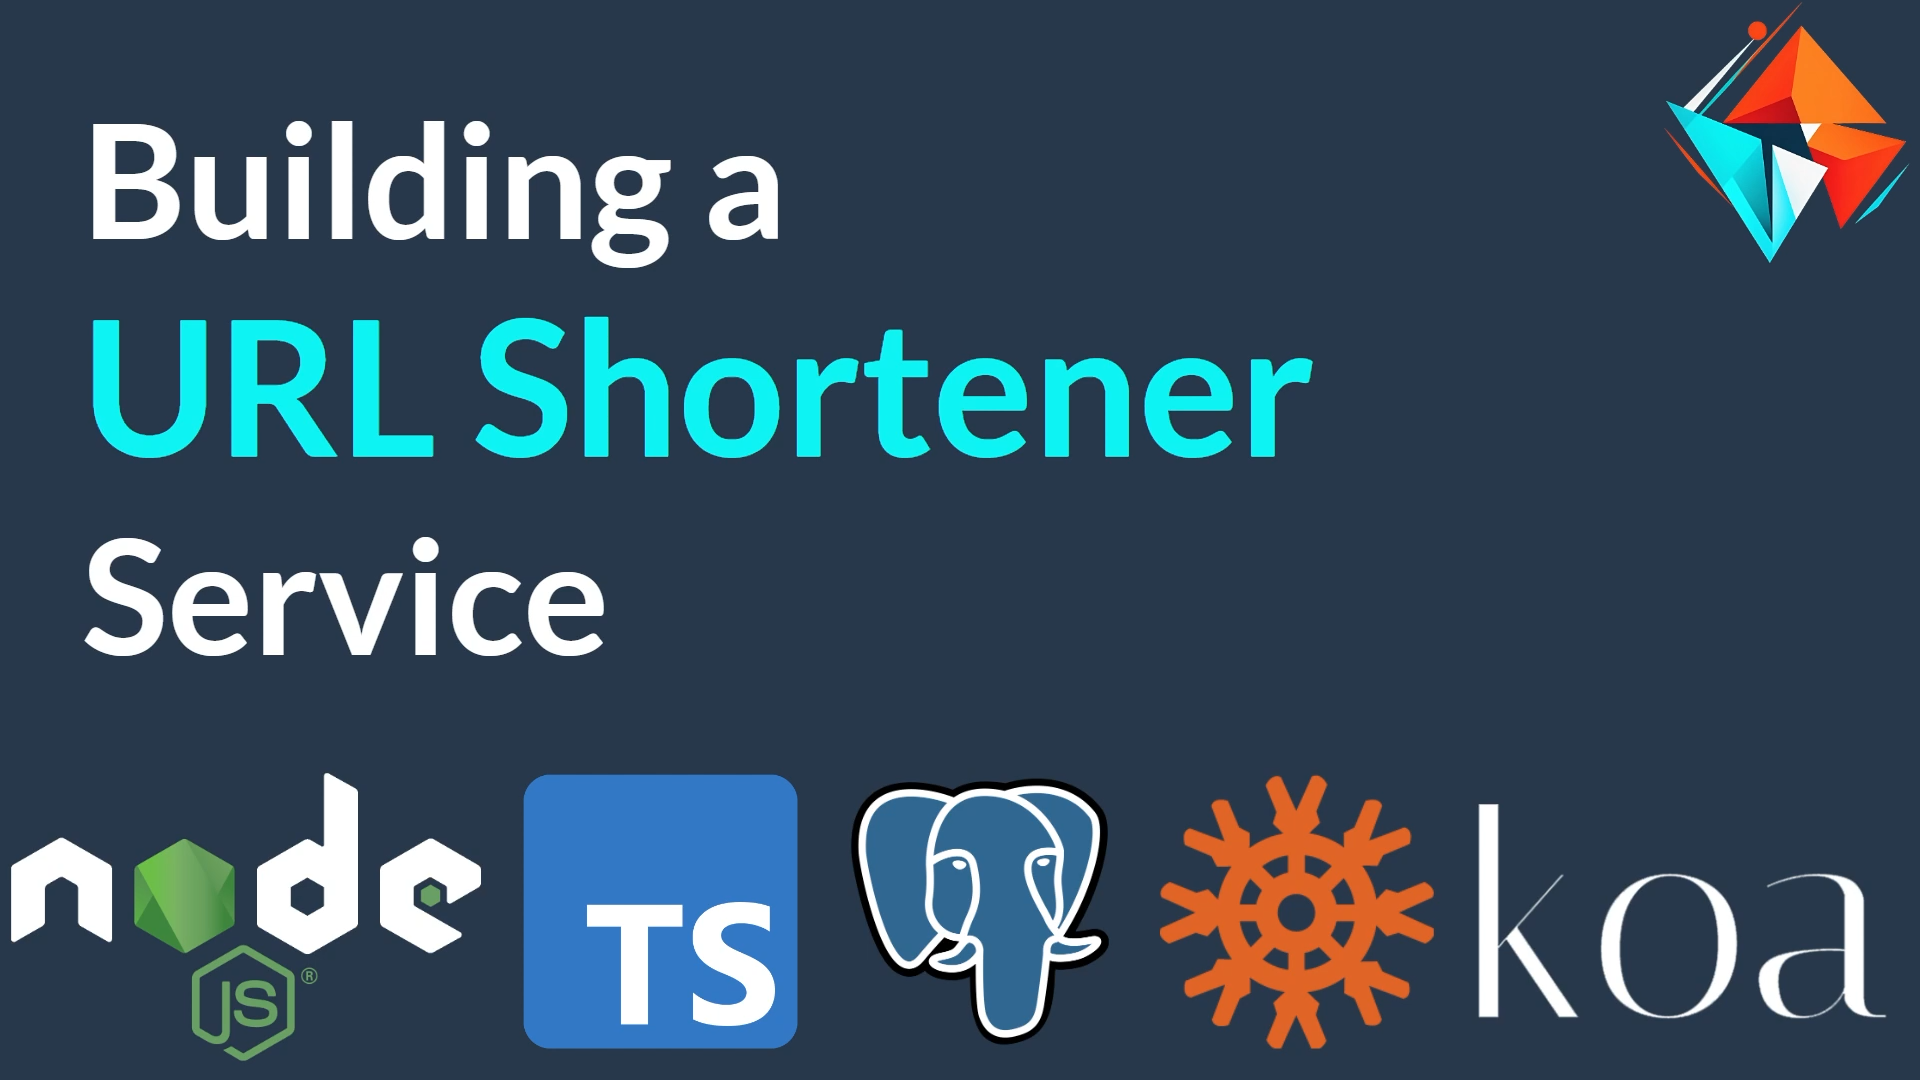 URL Shortener: TypeScript, PostgreSQL, Koa.Js, REST and MVC.